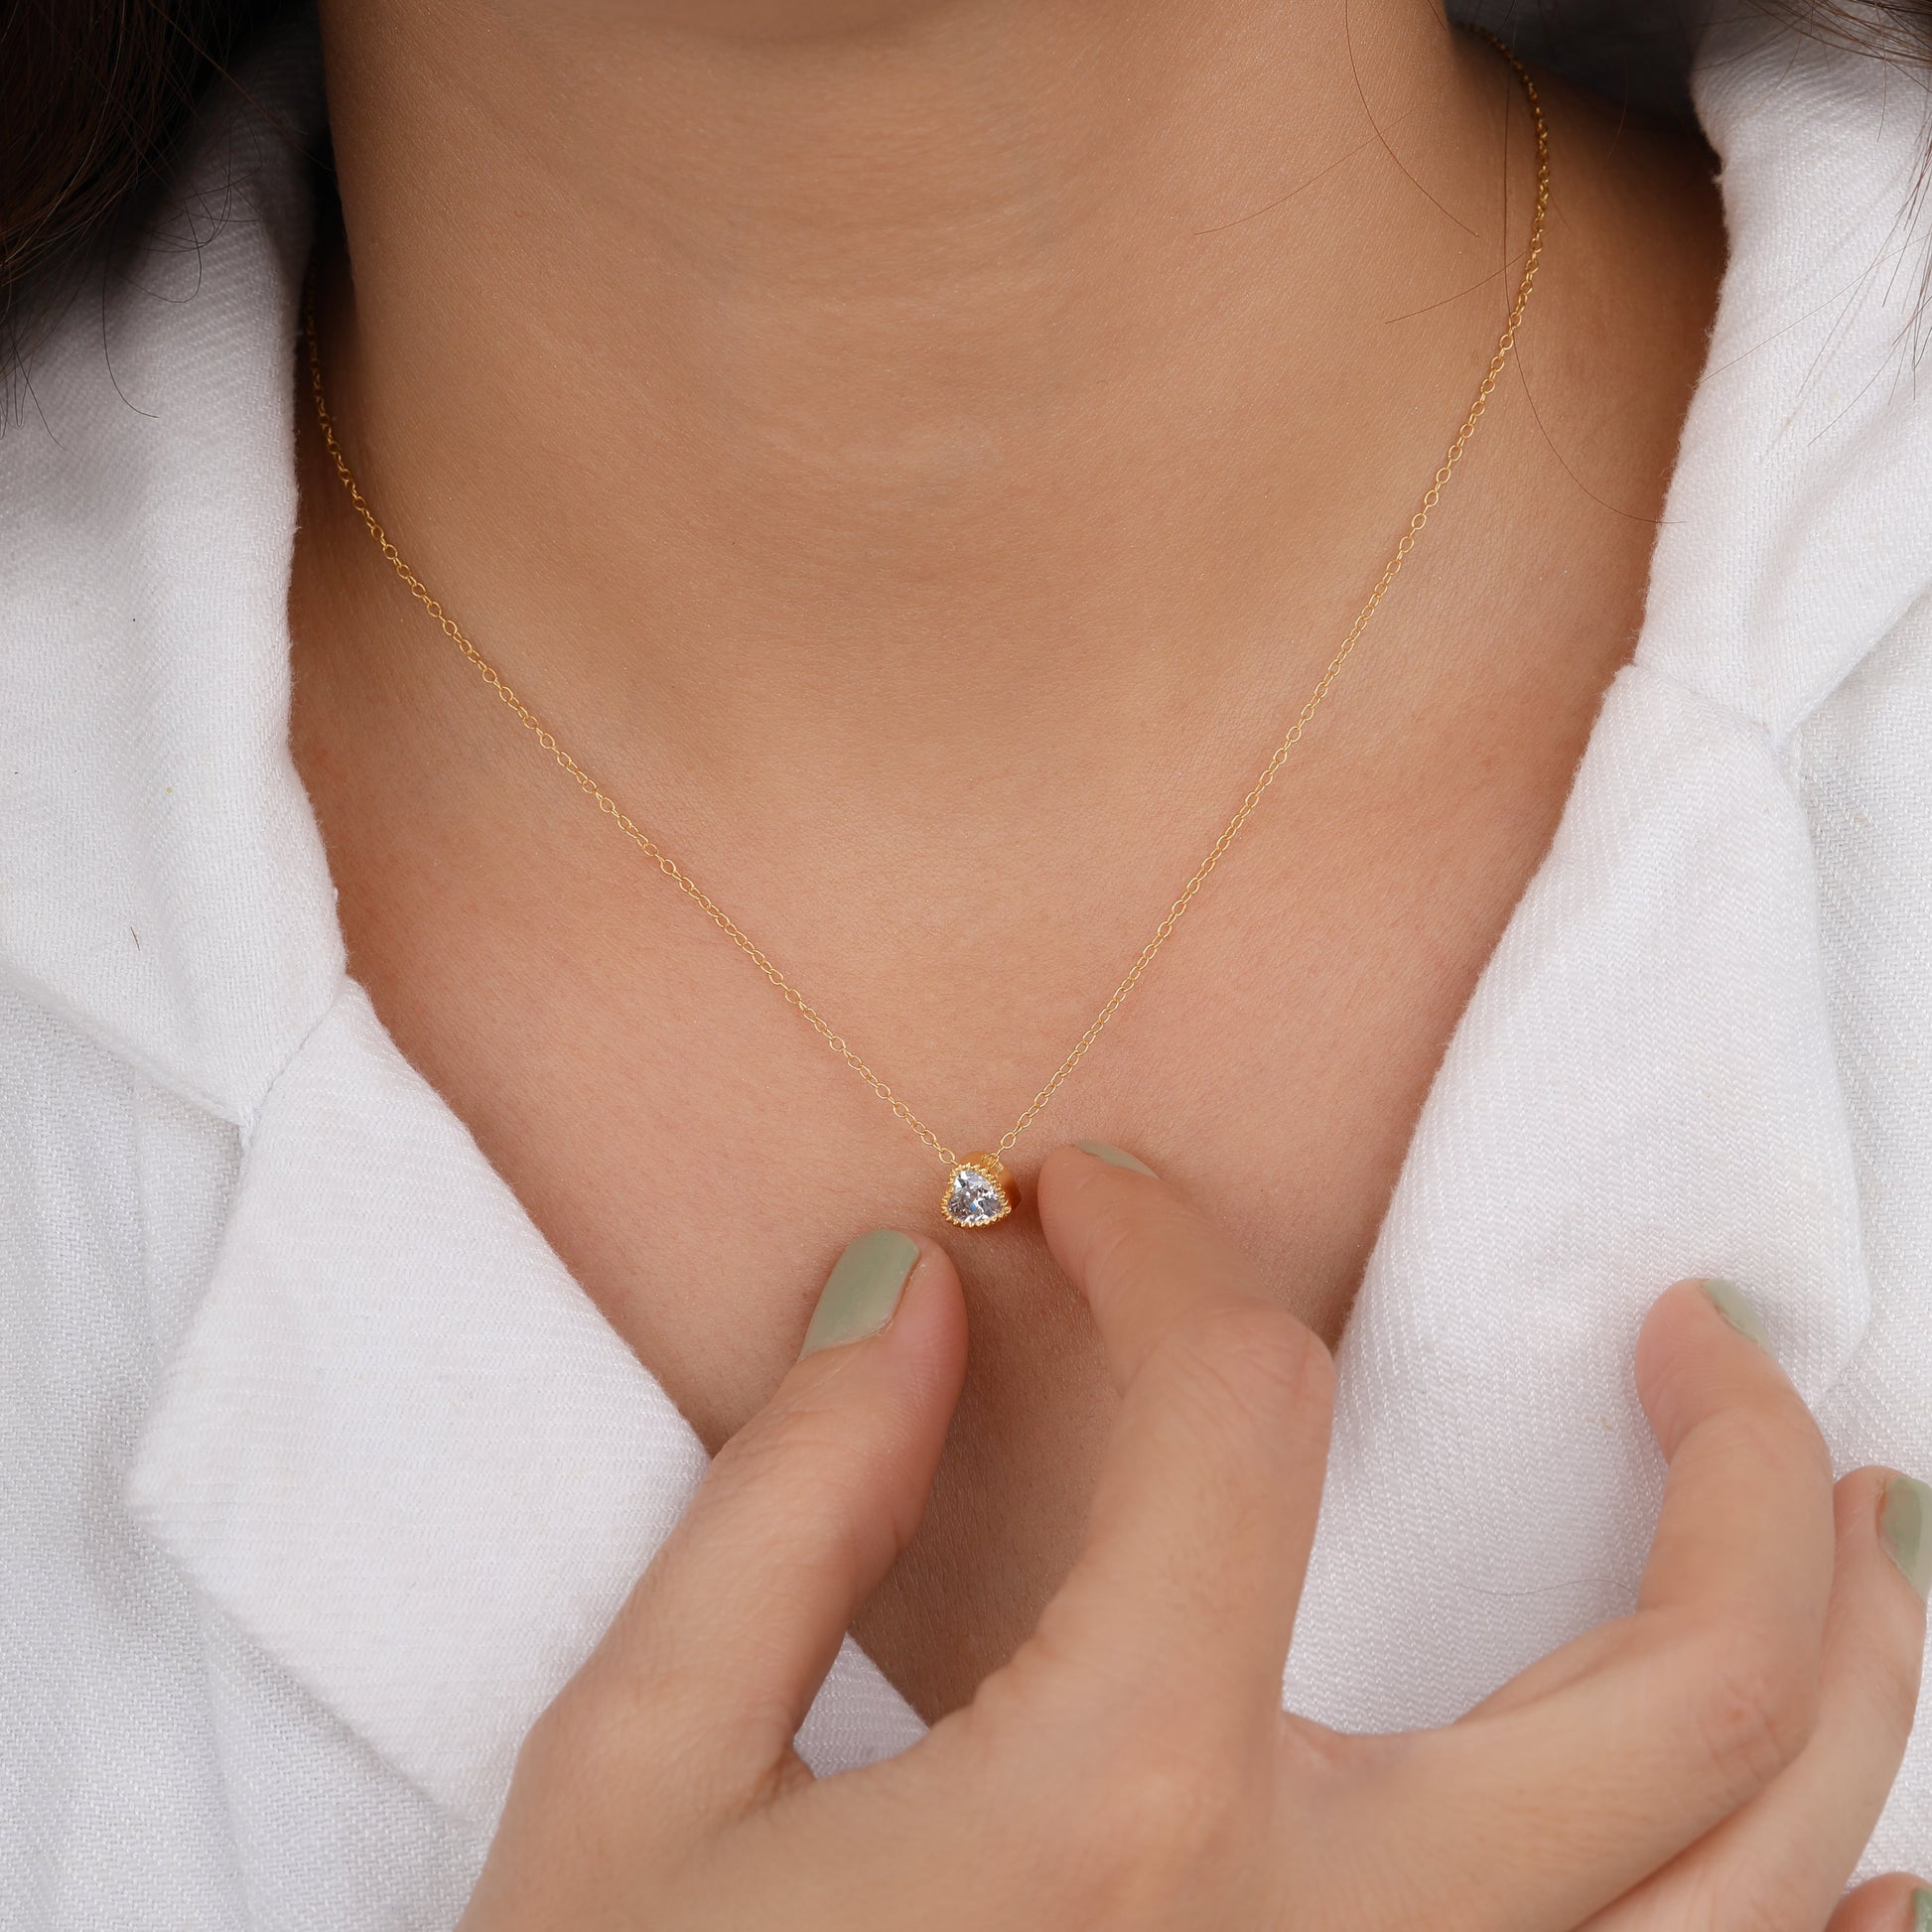 Bezel Set Heart Shape Diamond Solitaire Necklace